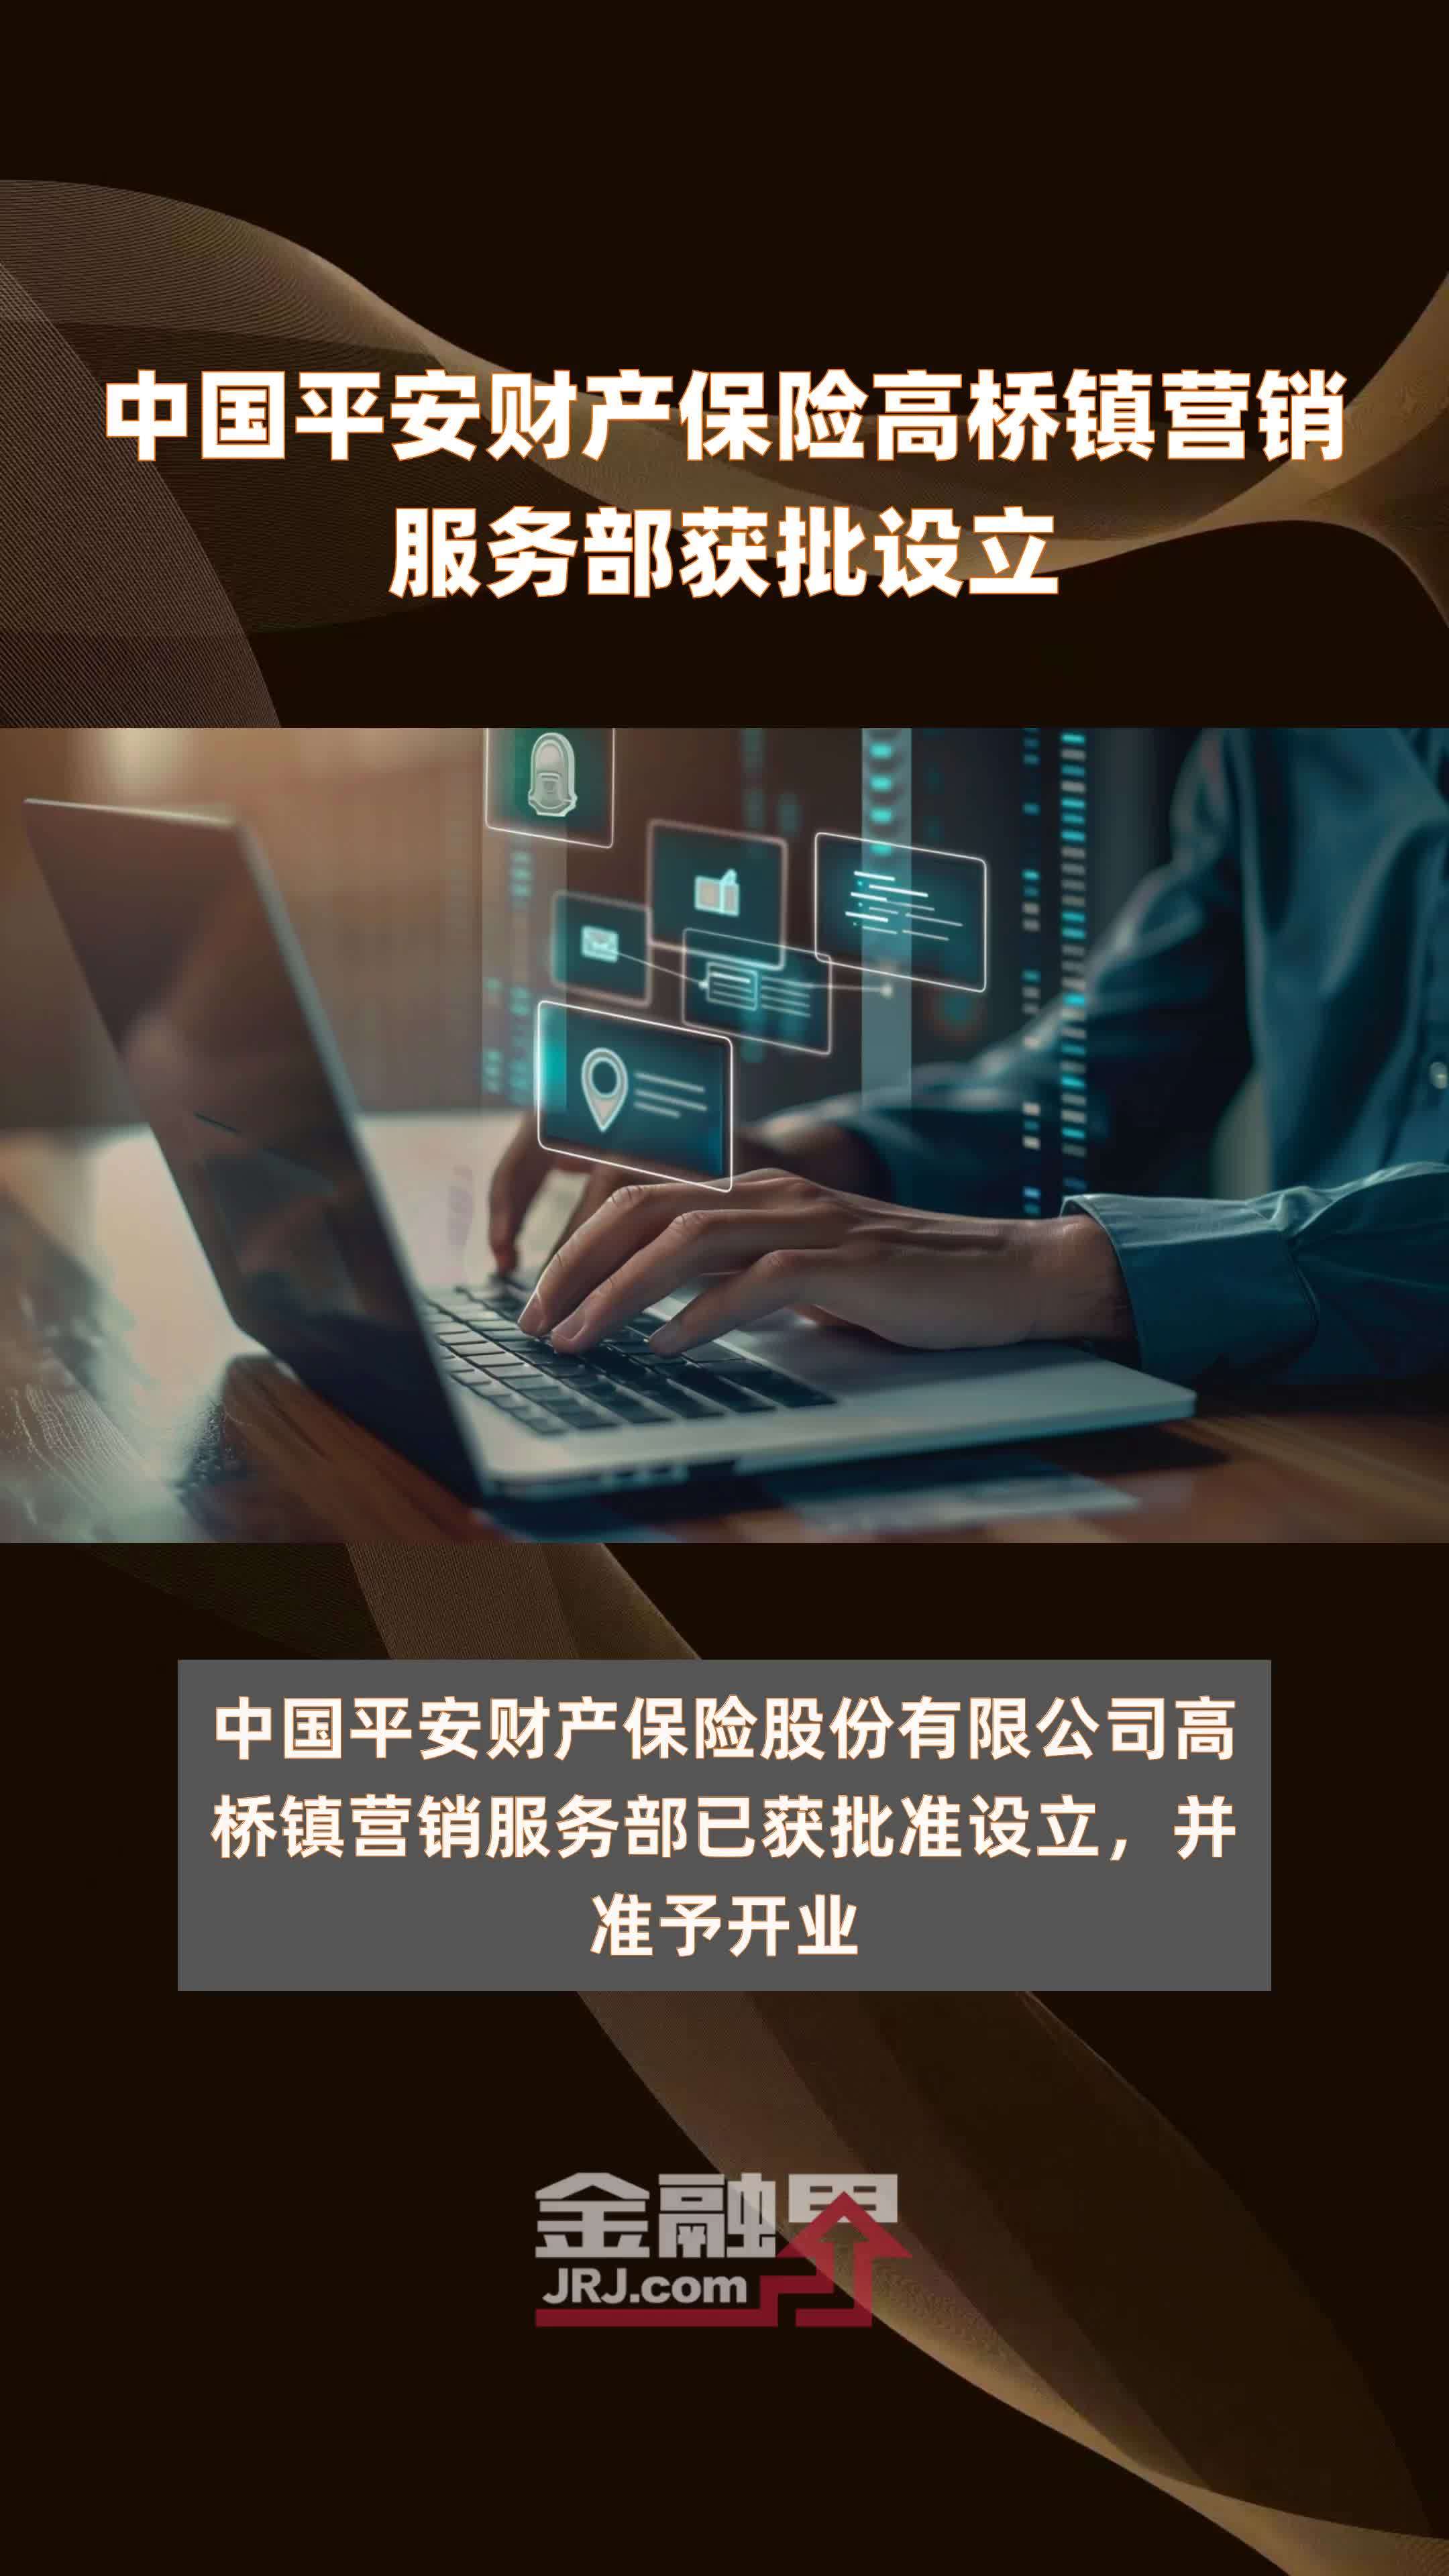 中国平安财产保险高桥镇营销服务部获批设立快报